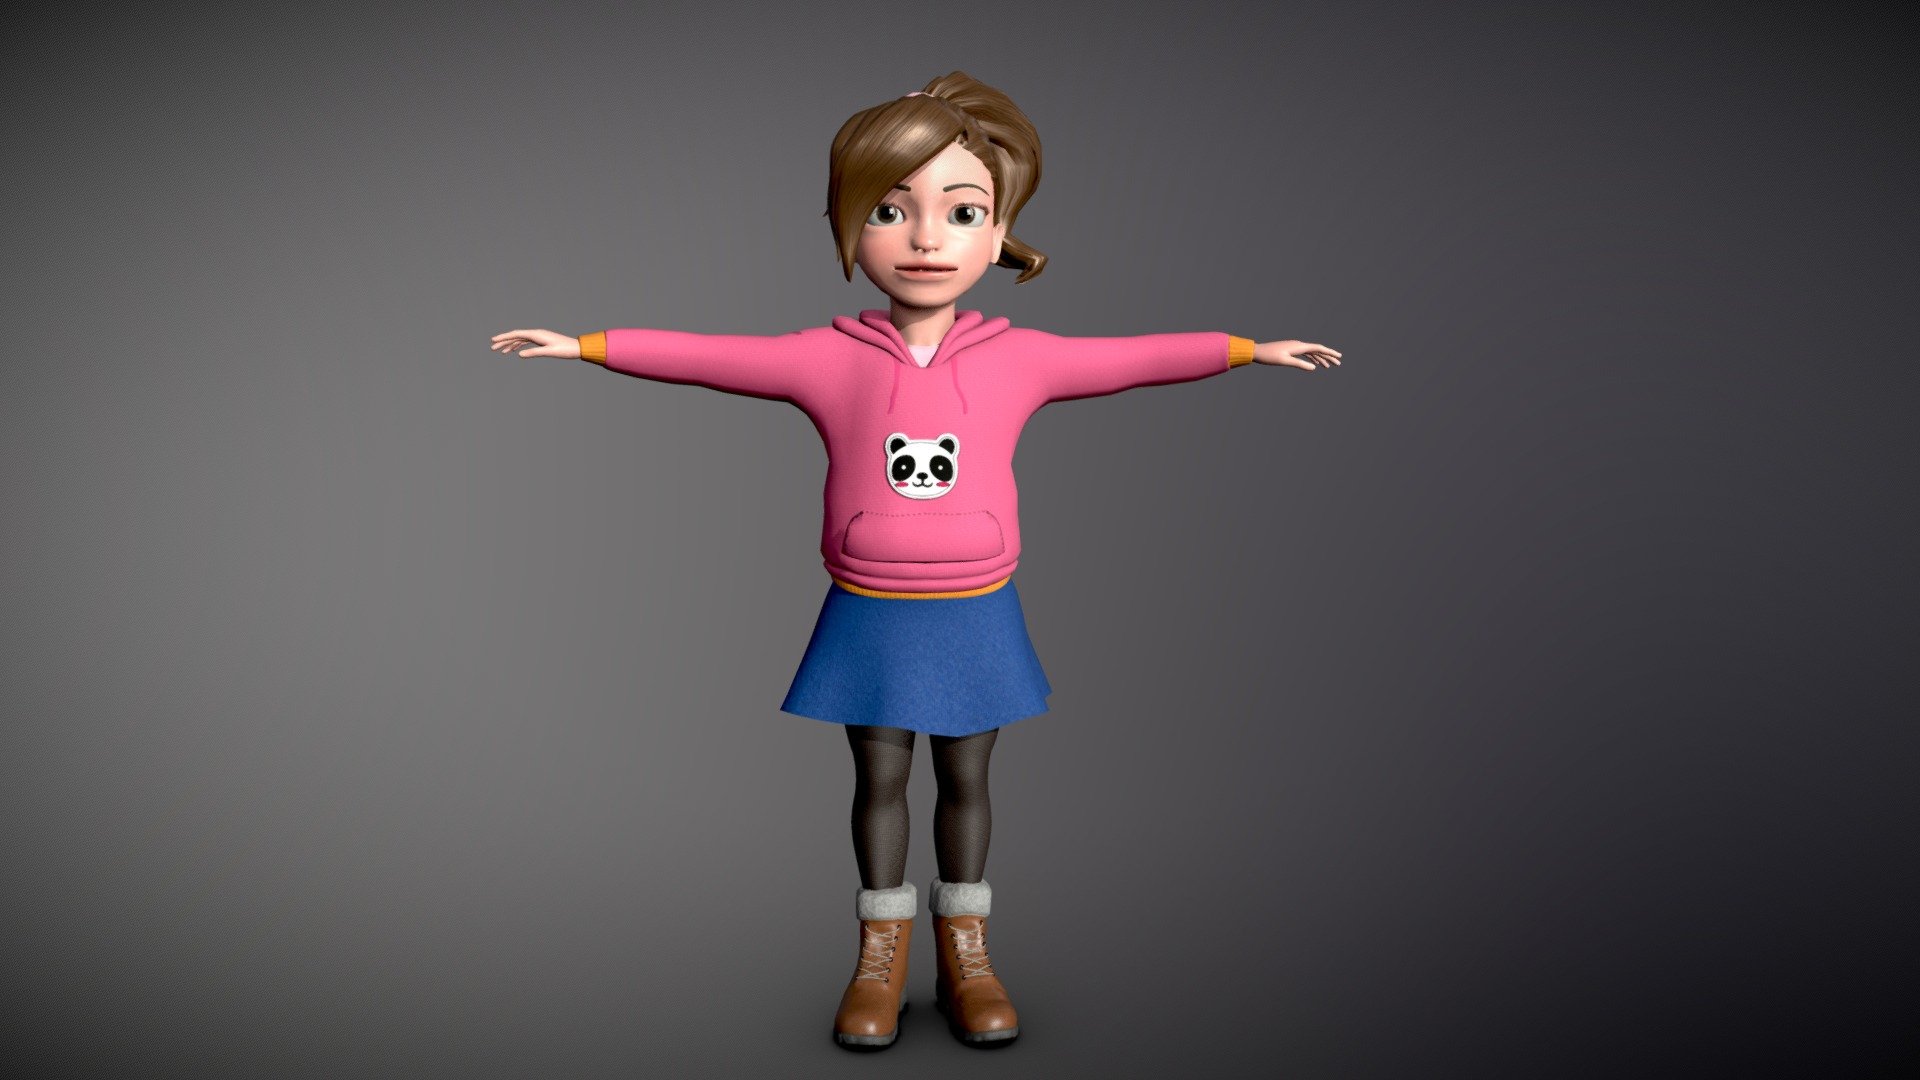 "Little Girl" 3D Model. 